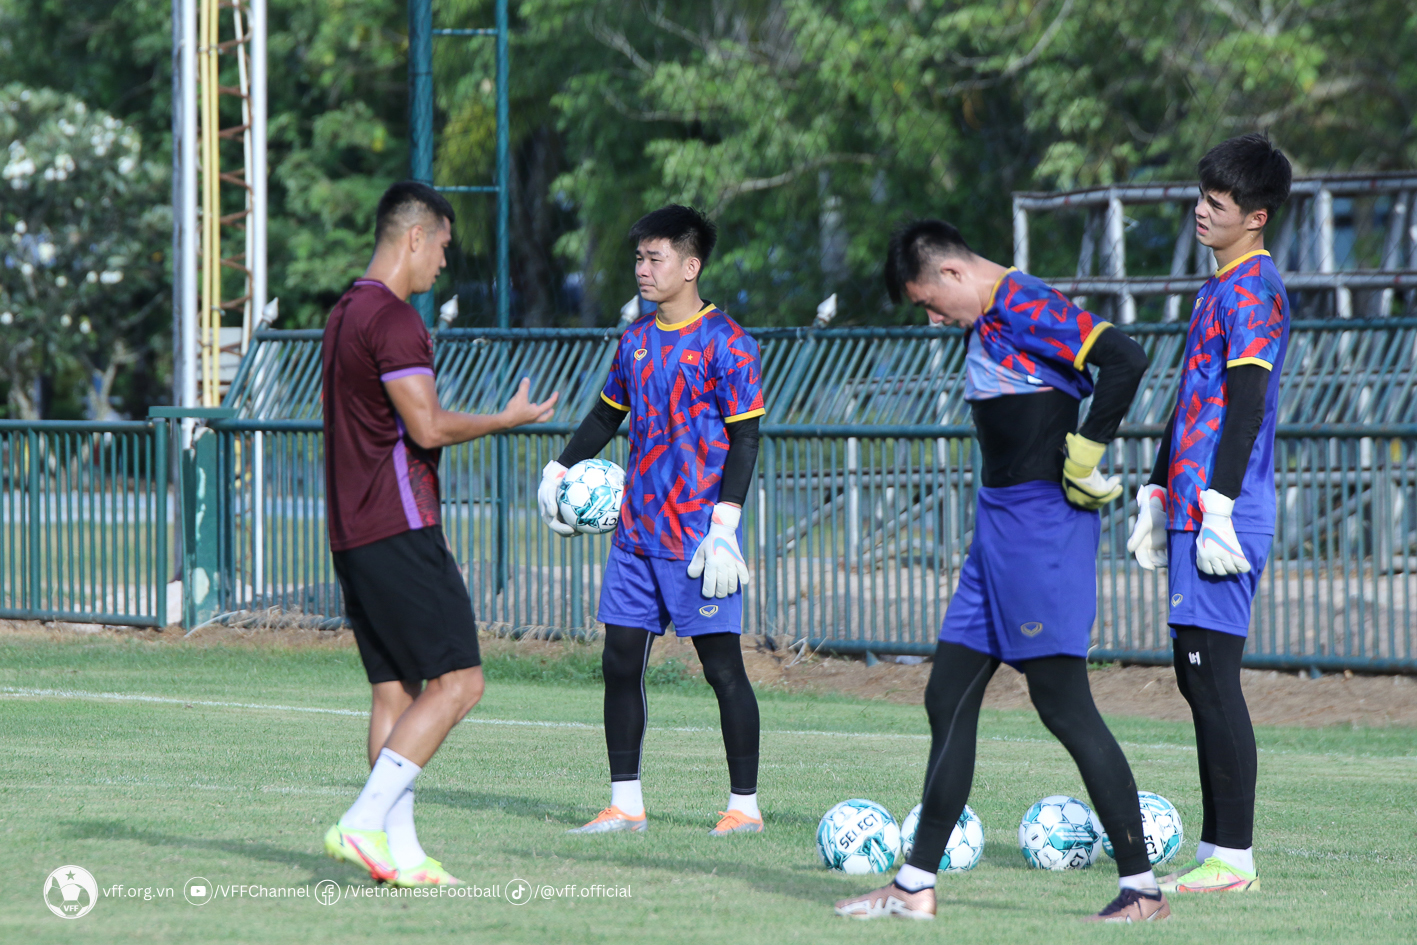 Buổi tập của U23 Việt Nam nhận nhiều sự quan tâm từ cổ động viên Thái Lan. Nhiều người đã trèo hàng rào để quan sát thầy trò huấn luyện viên Hoàng Anh Tuấn tập luyện.